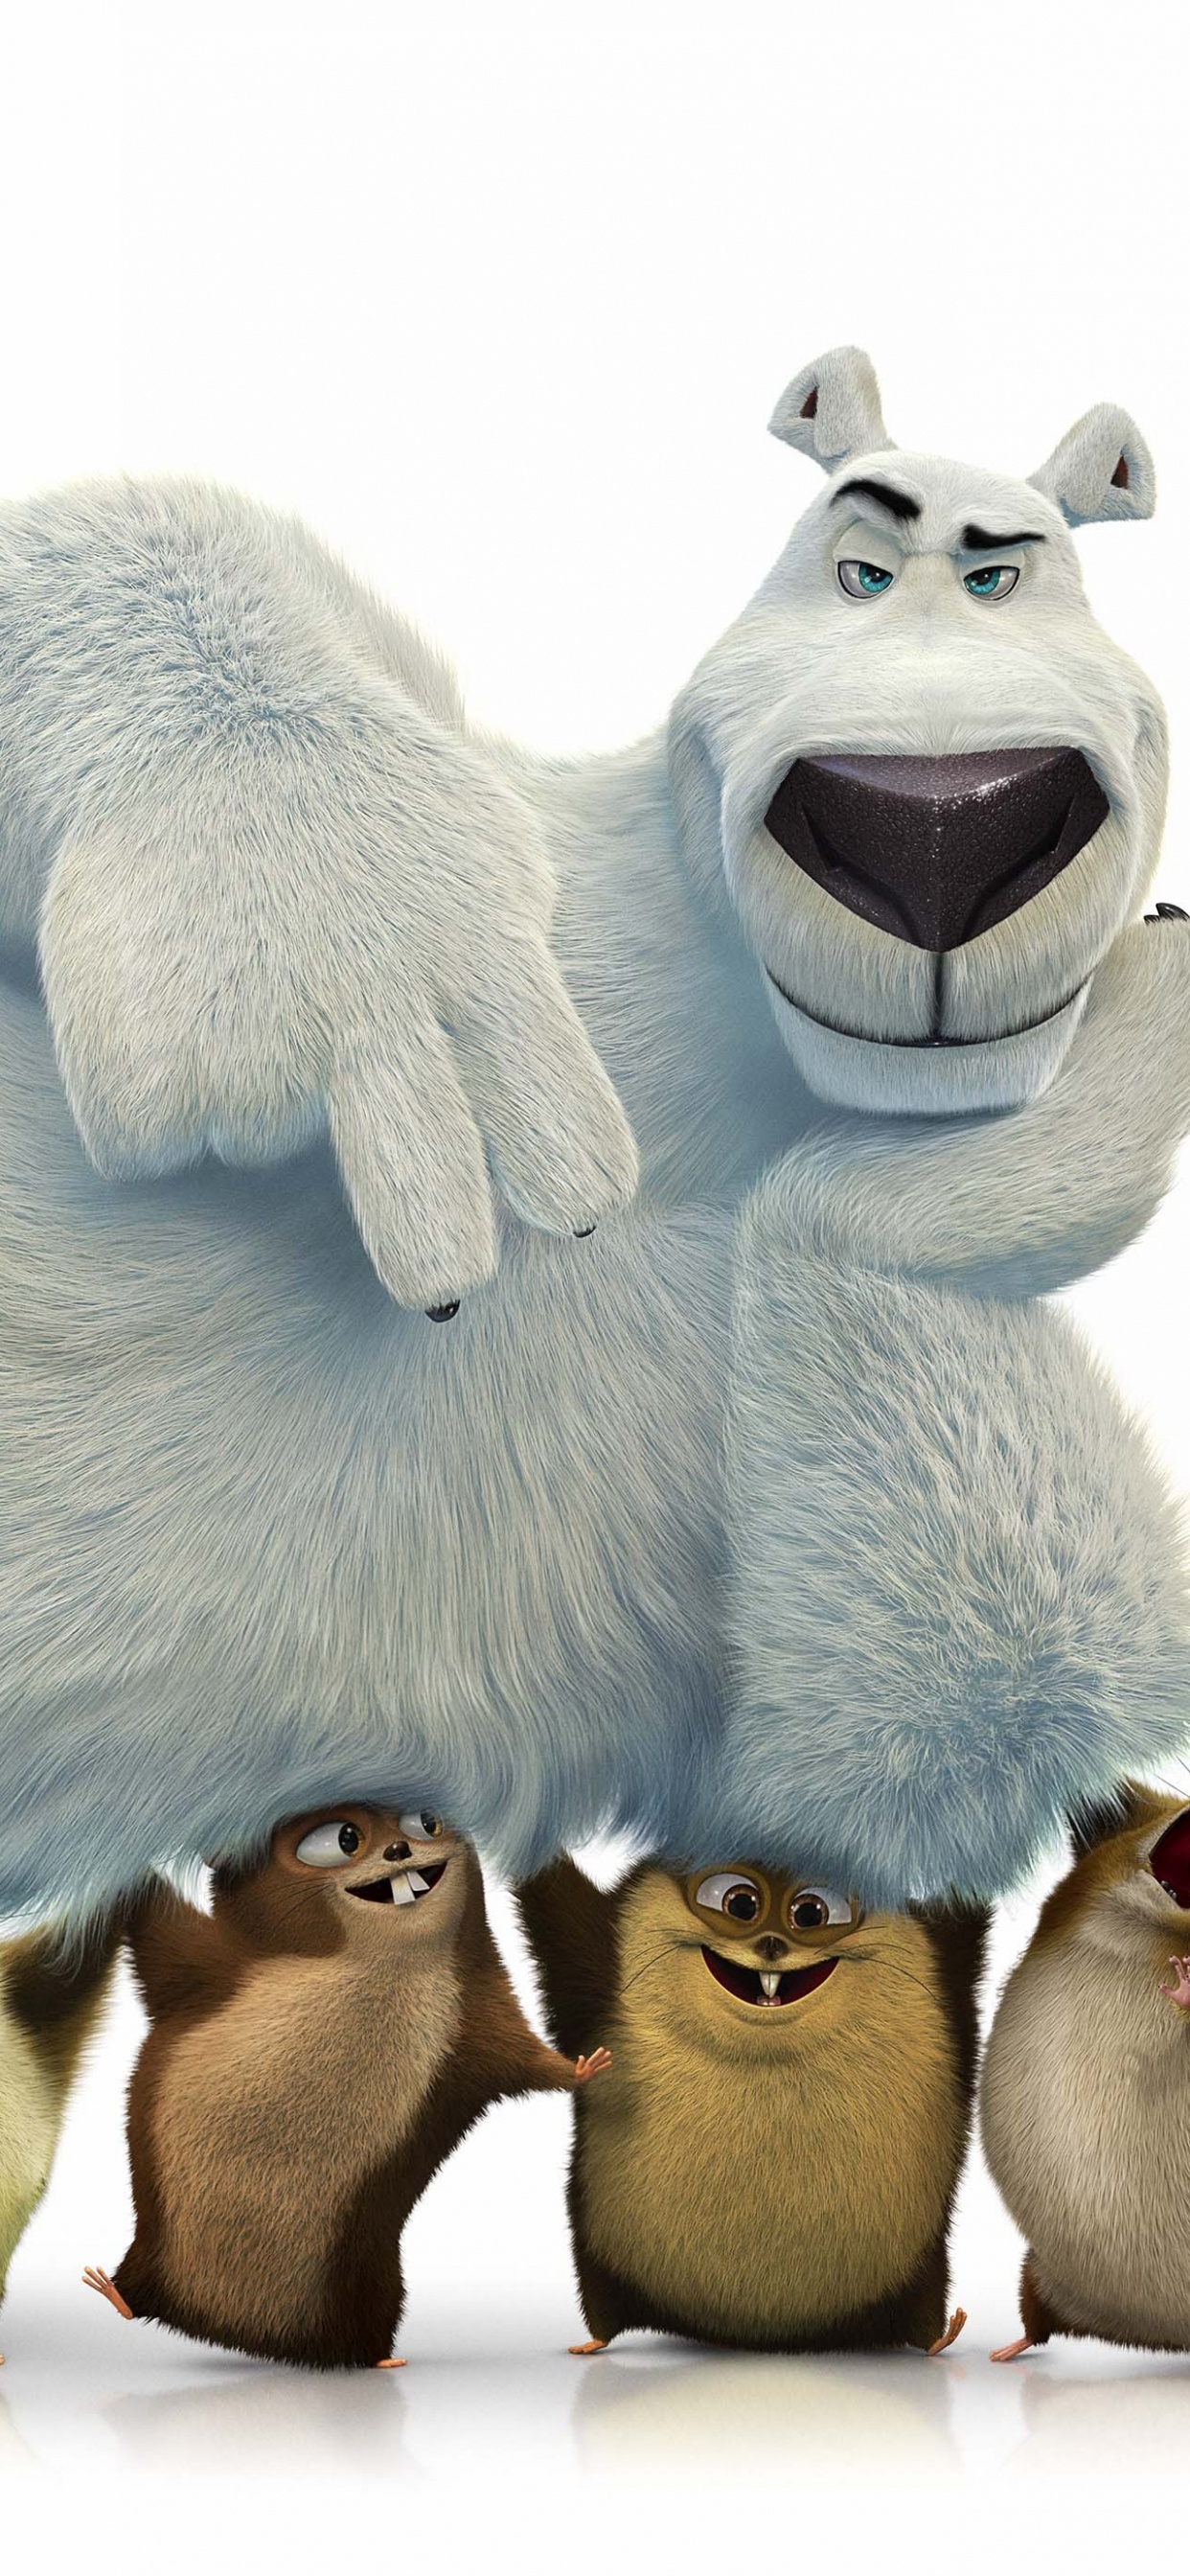 北极熊, 毛绒玩具, 动画, 毛绒, 电影 壁纸 1242x2688 允许